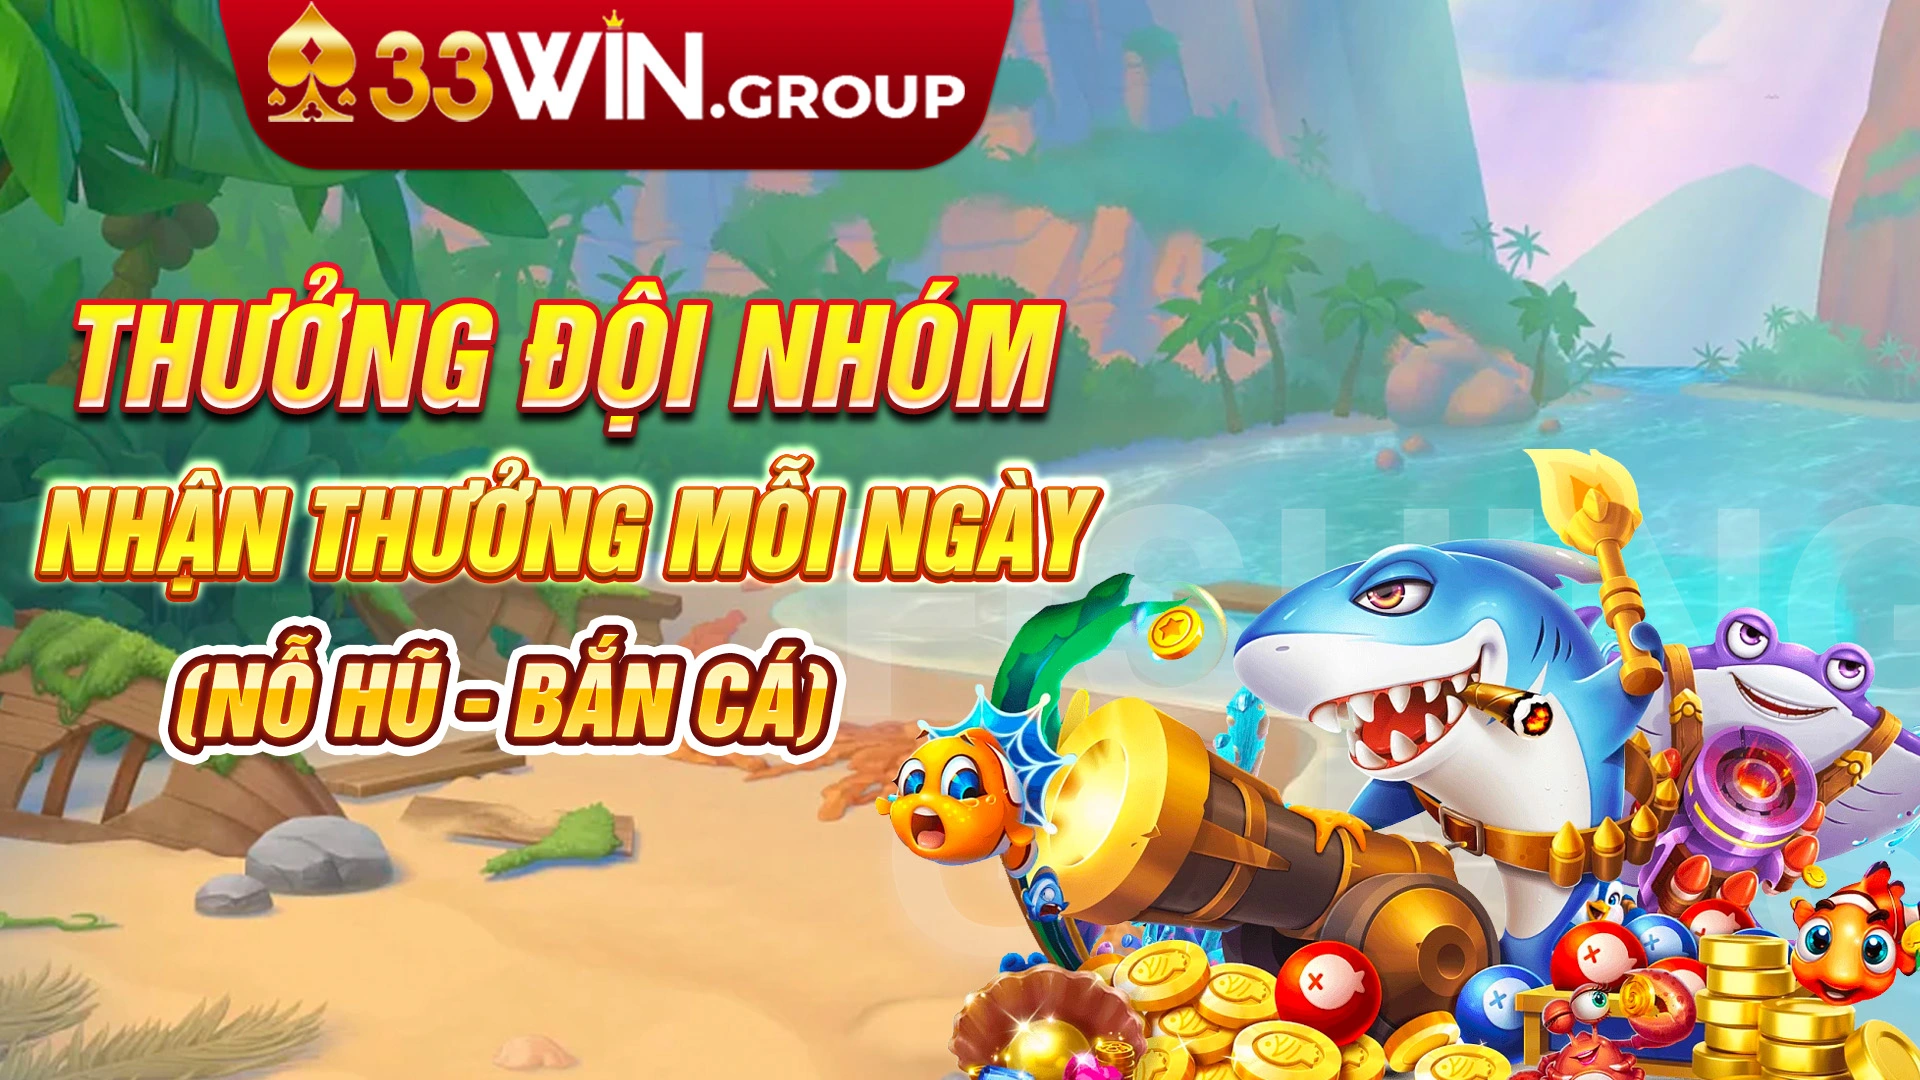 Khuyen-mai-33win-thuong-doi-nhom-nhan-thuong-moi-ngay-no-hu-ban-ca